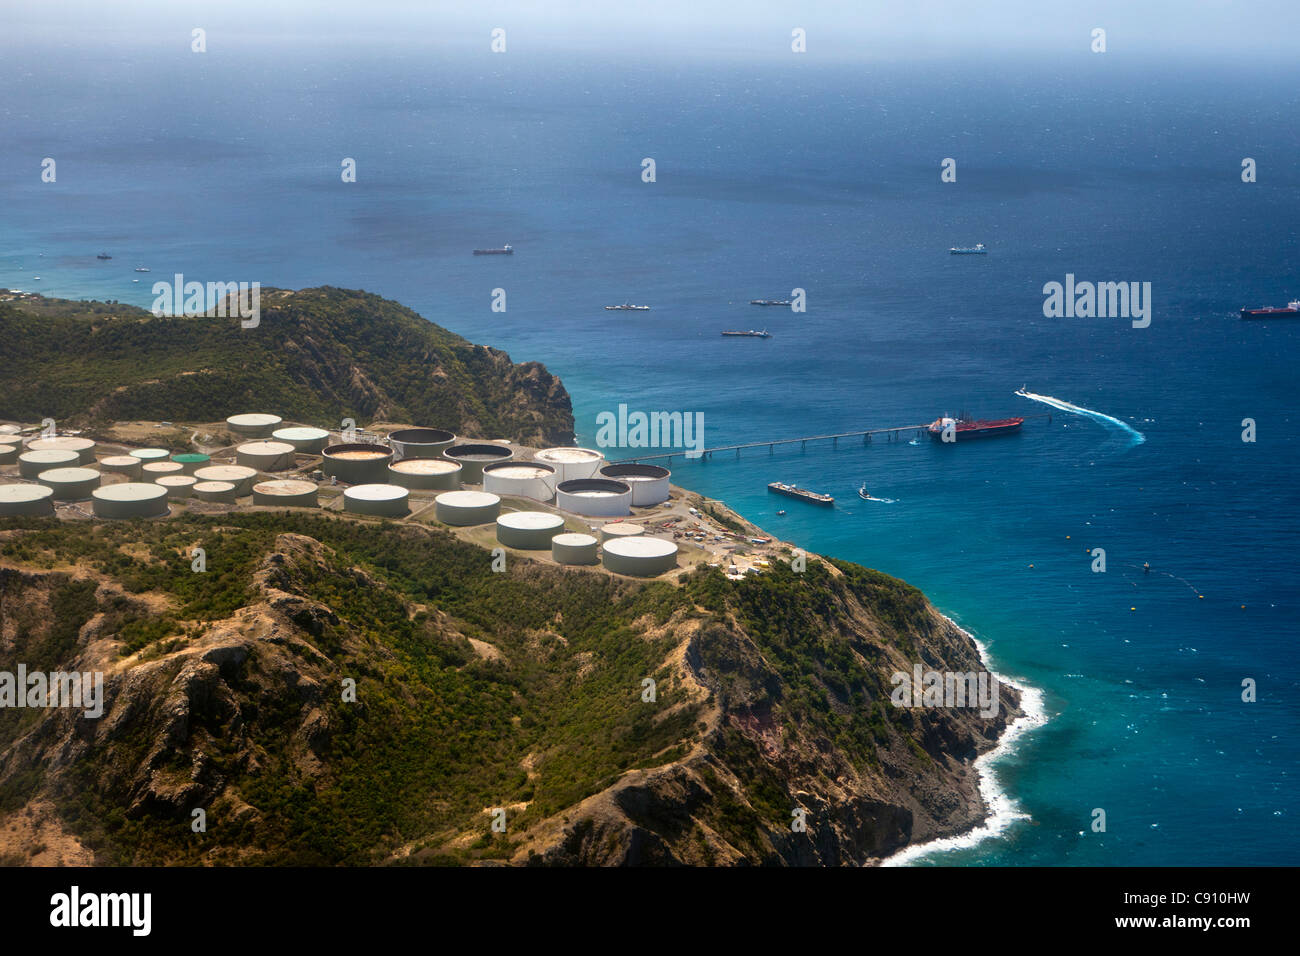 Oranjestad, Sint Eustatius Isola, olandese dei Caraibi. Le petroliere e Statia terminale di olio ( olio e di trasbordo di immagazzinamento). Foto Stock